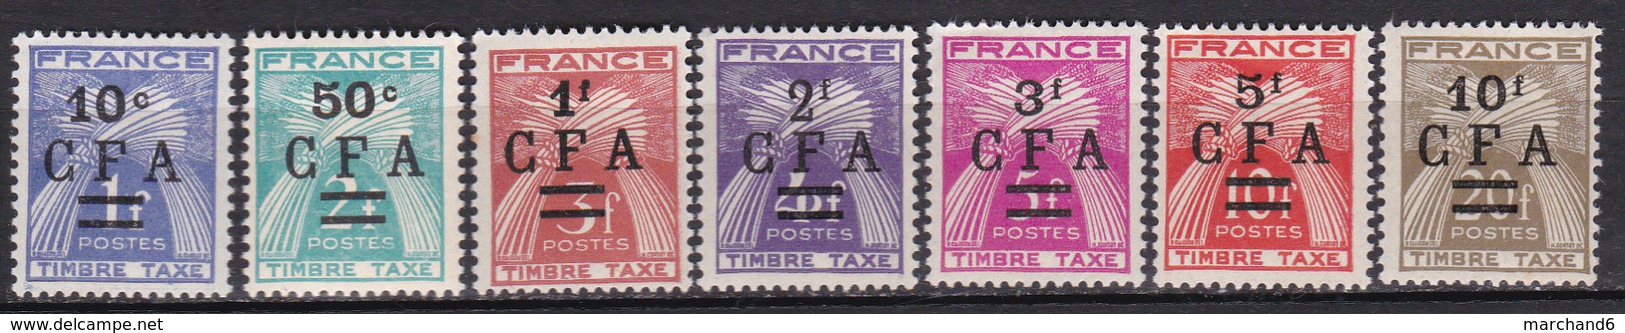 Réunion Surchargés Cfa Timbres Taxe N°36 à 42 Neuf* Charnière - Postage Due